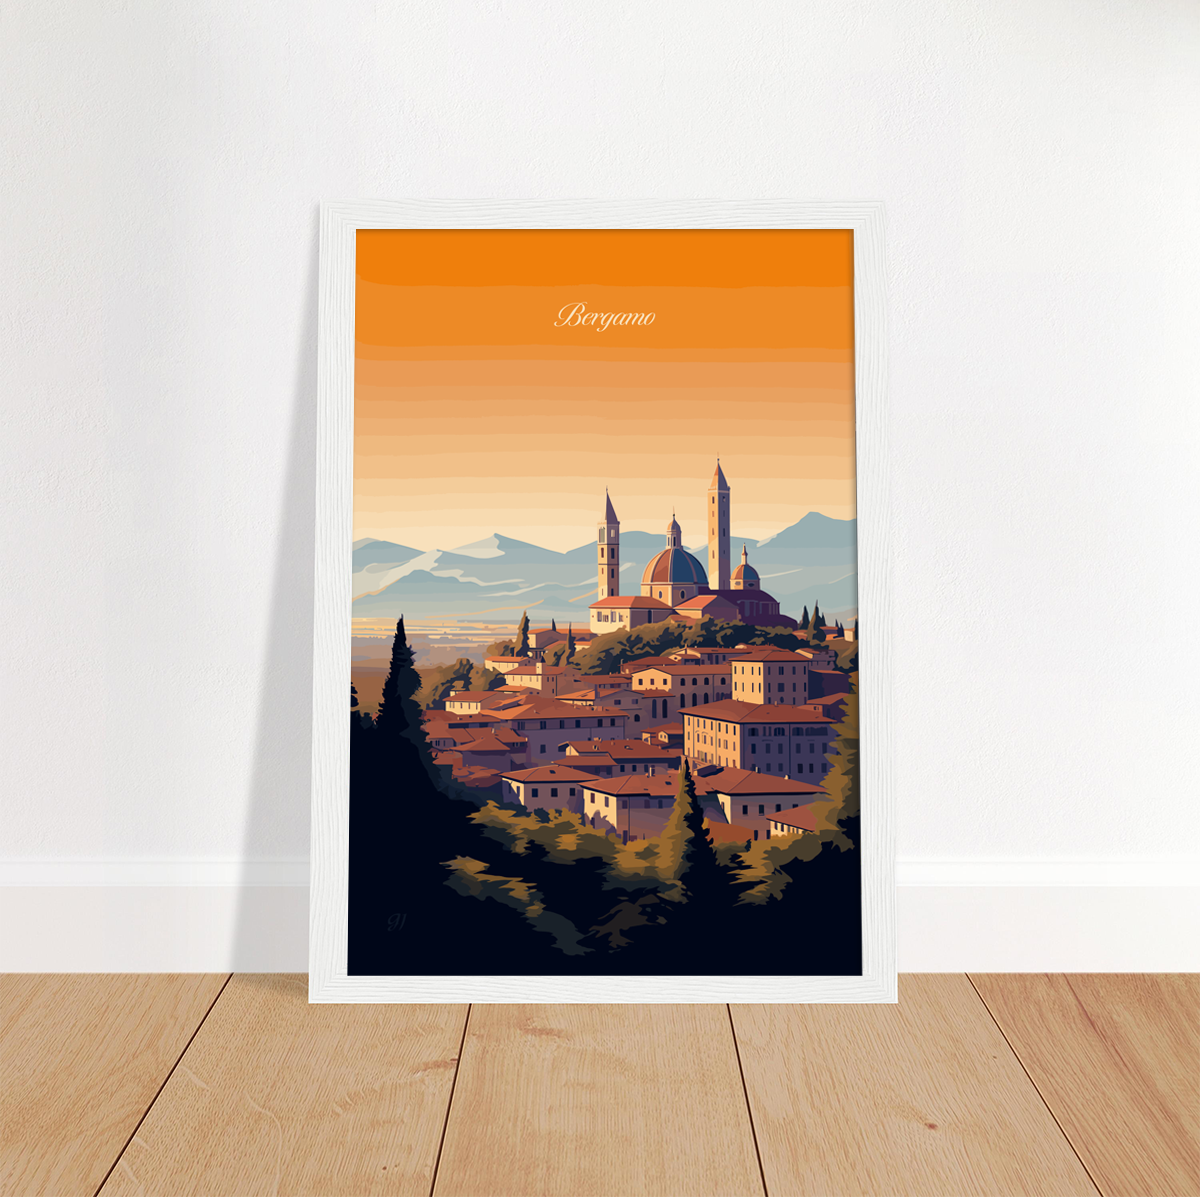 Bergamo poster by bon voyage design